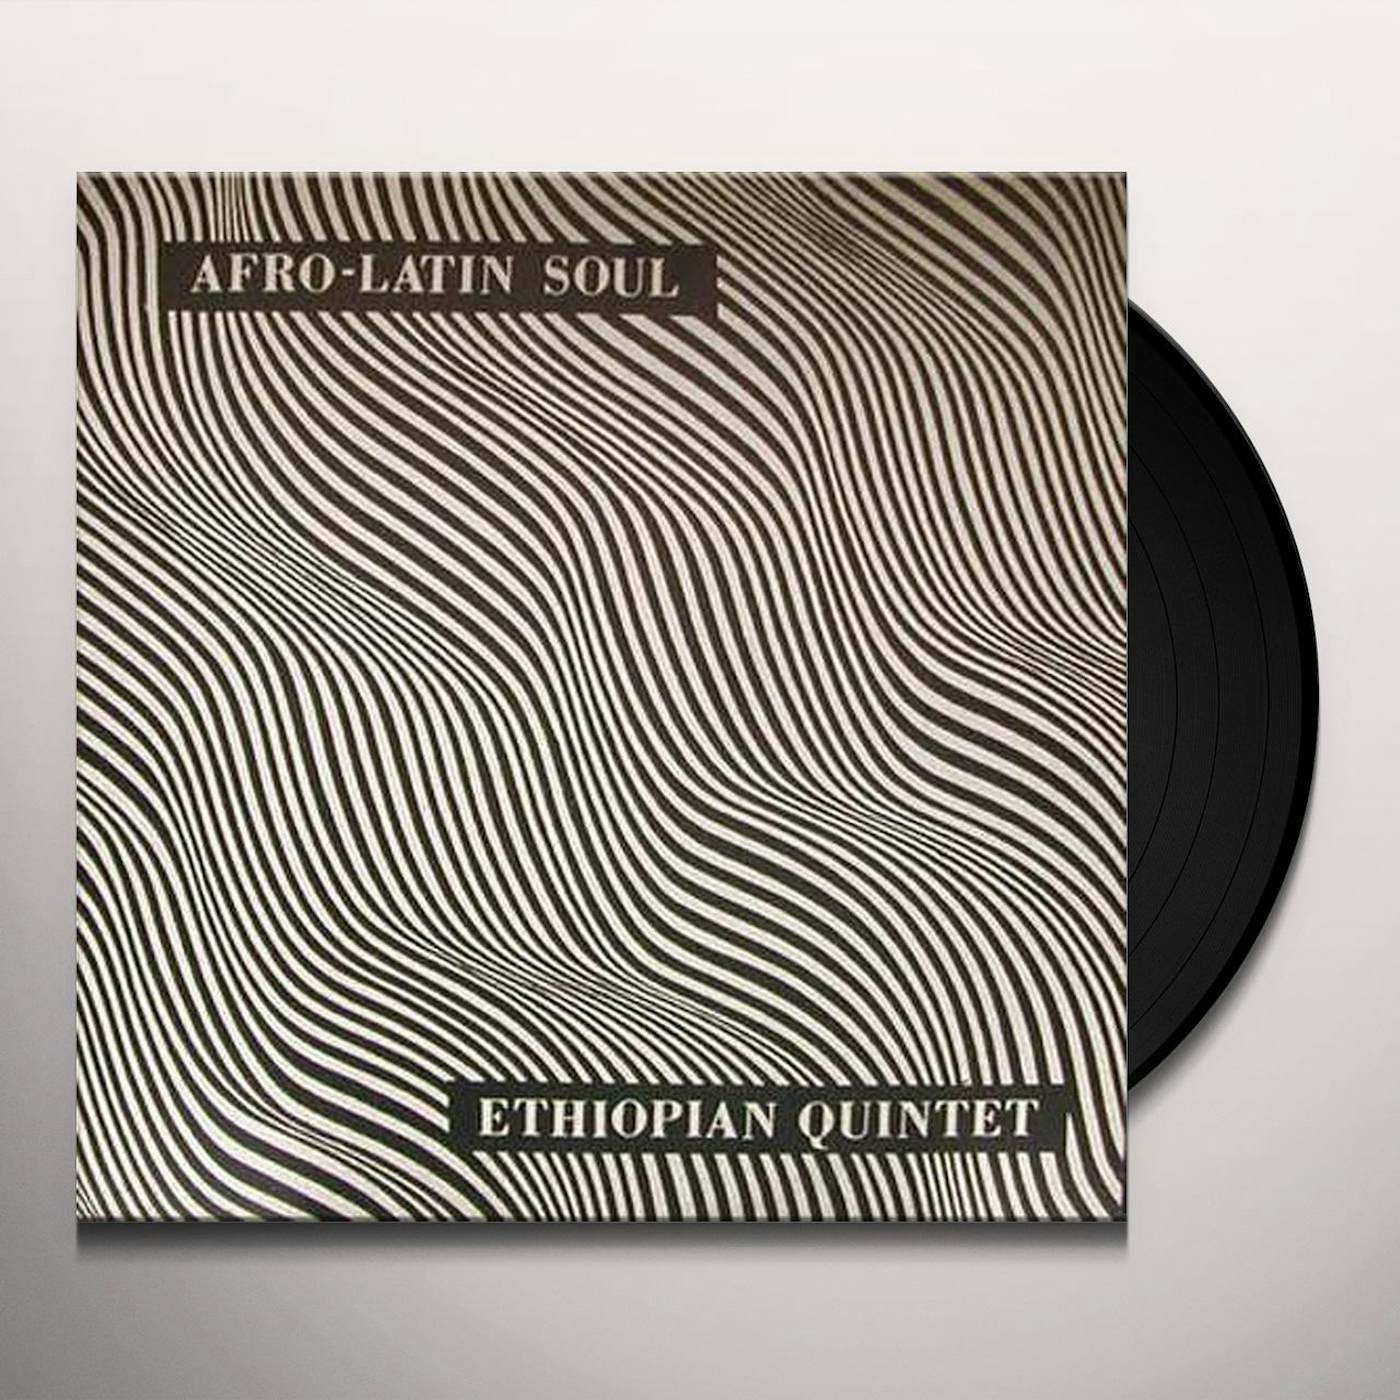 Mutlatu & His Ethiopian Quintet AFRO-LATIN SOUL Vinyl Record